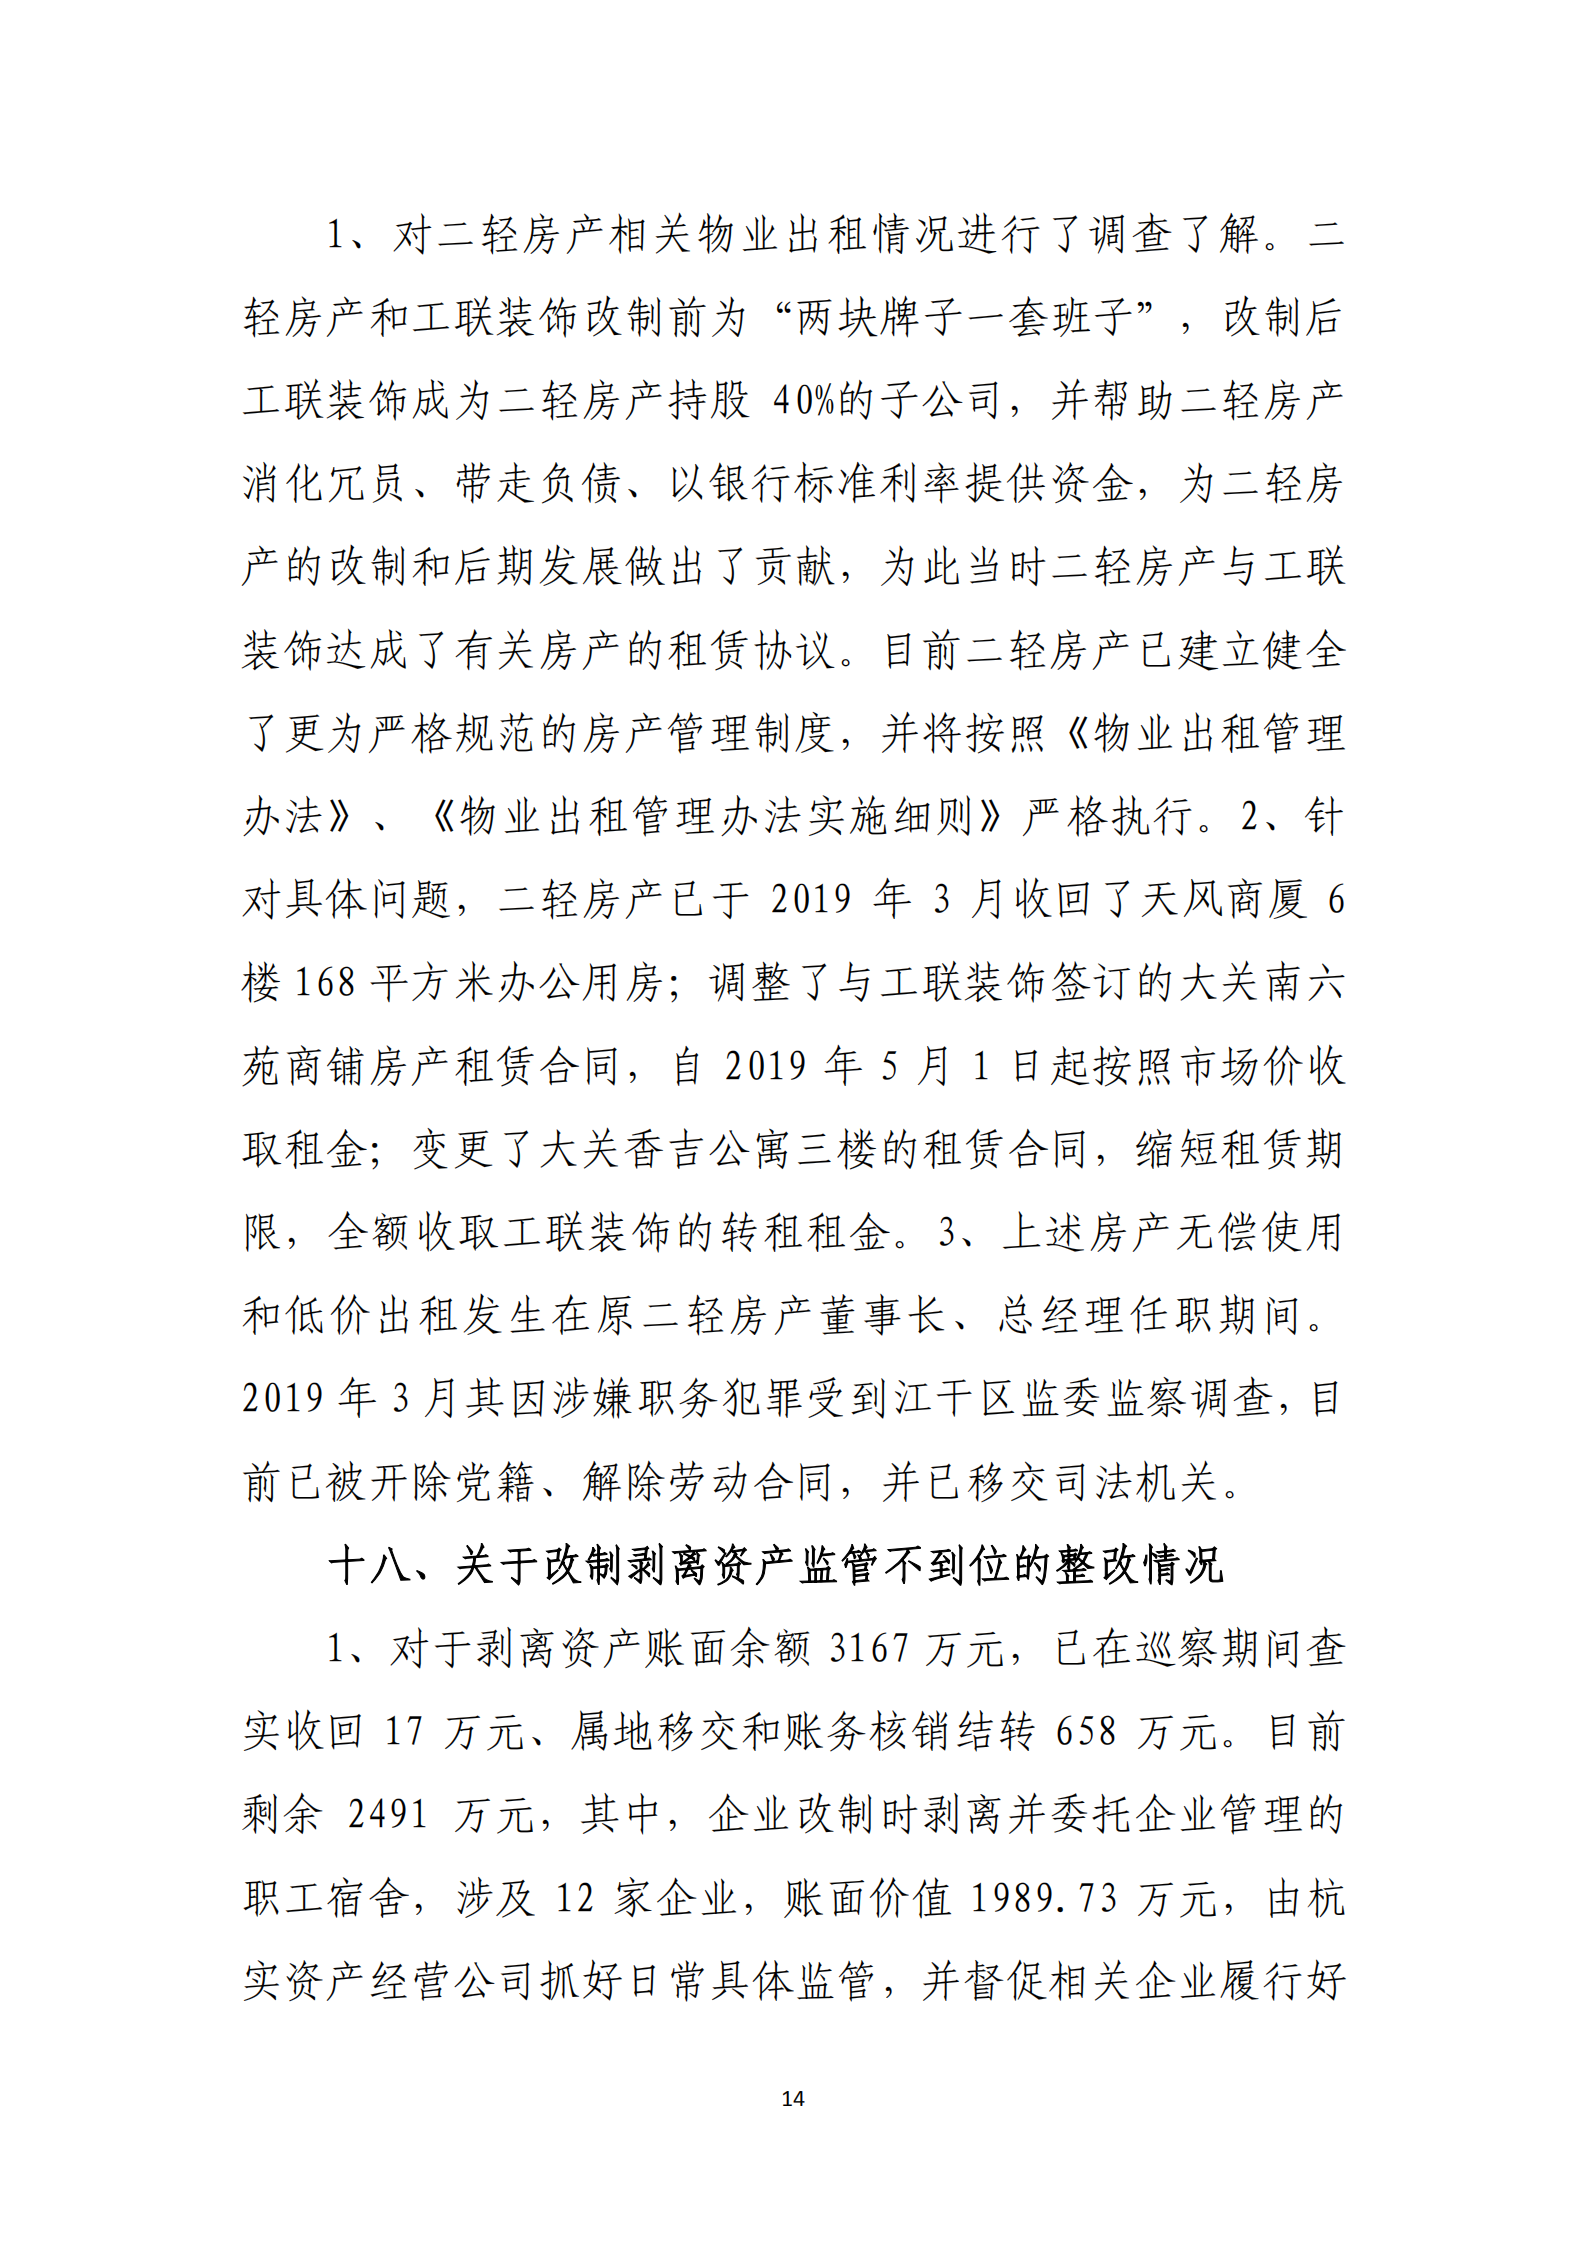 【体育365官方网站】中国有限公司党委关于巡察整改情况的通报_13.png